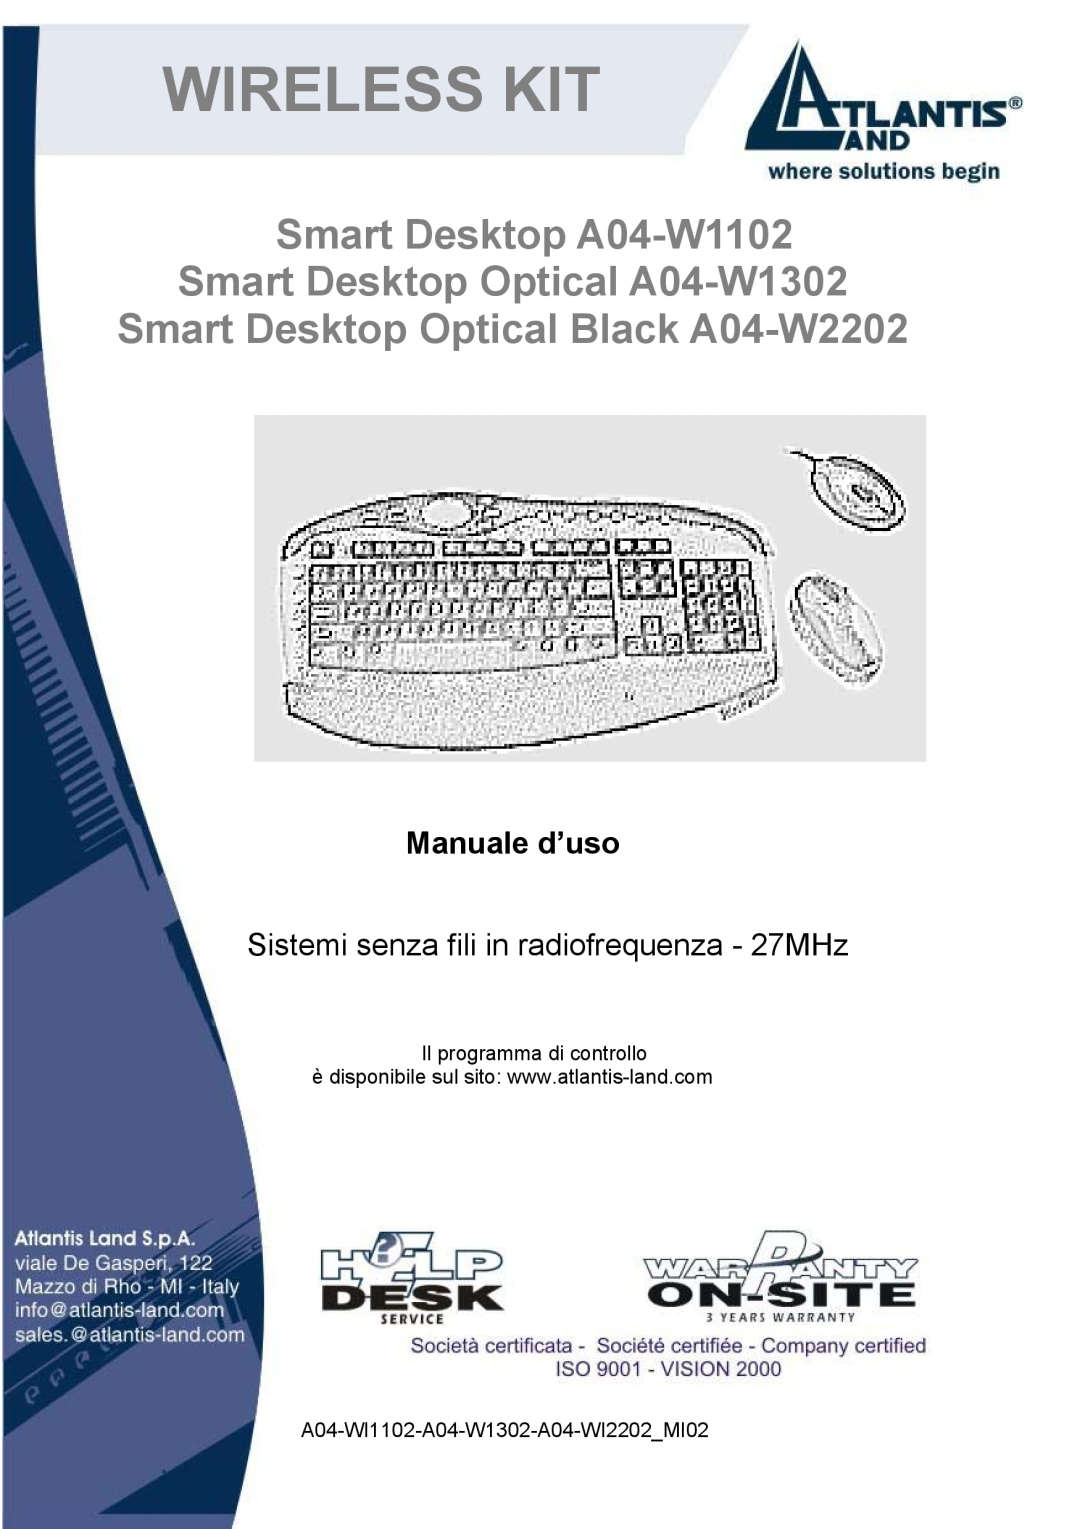 Atlantis Land A04-WI2202 manual Wireless Kit, Smart Desktop A04-W1102 Smart Desktop Optical A04-W1302, Manuale d’uso 